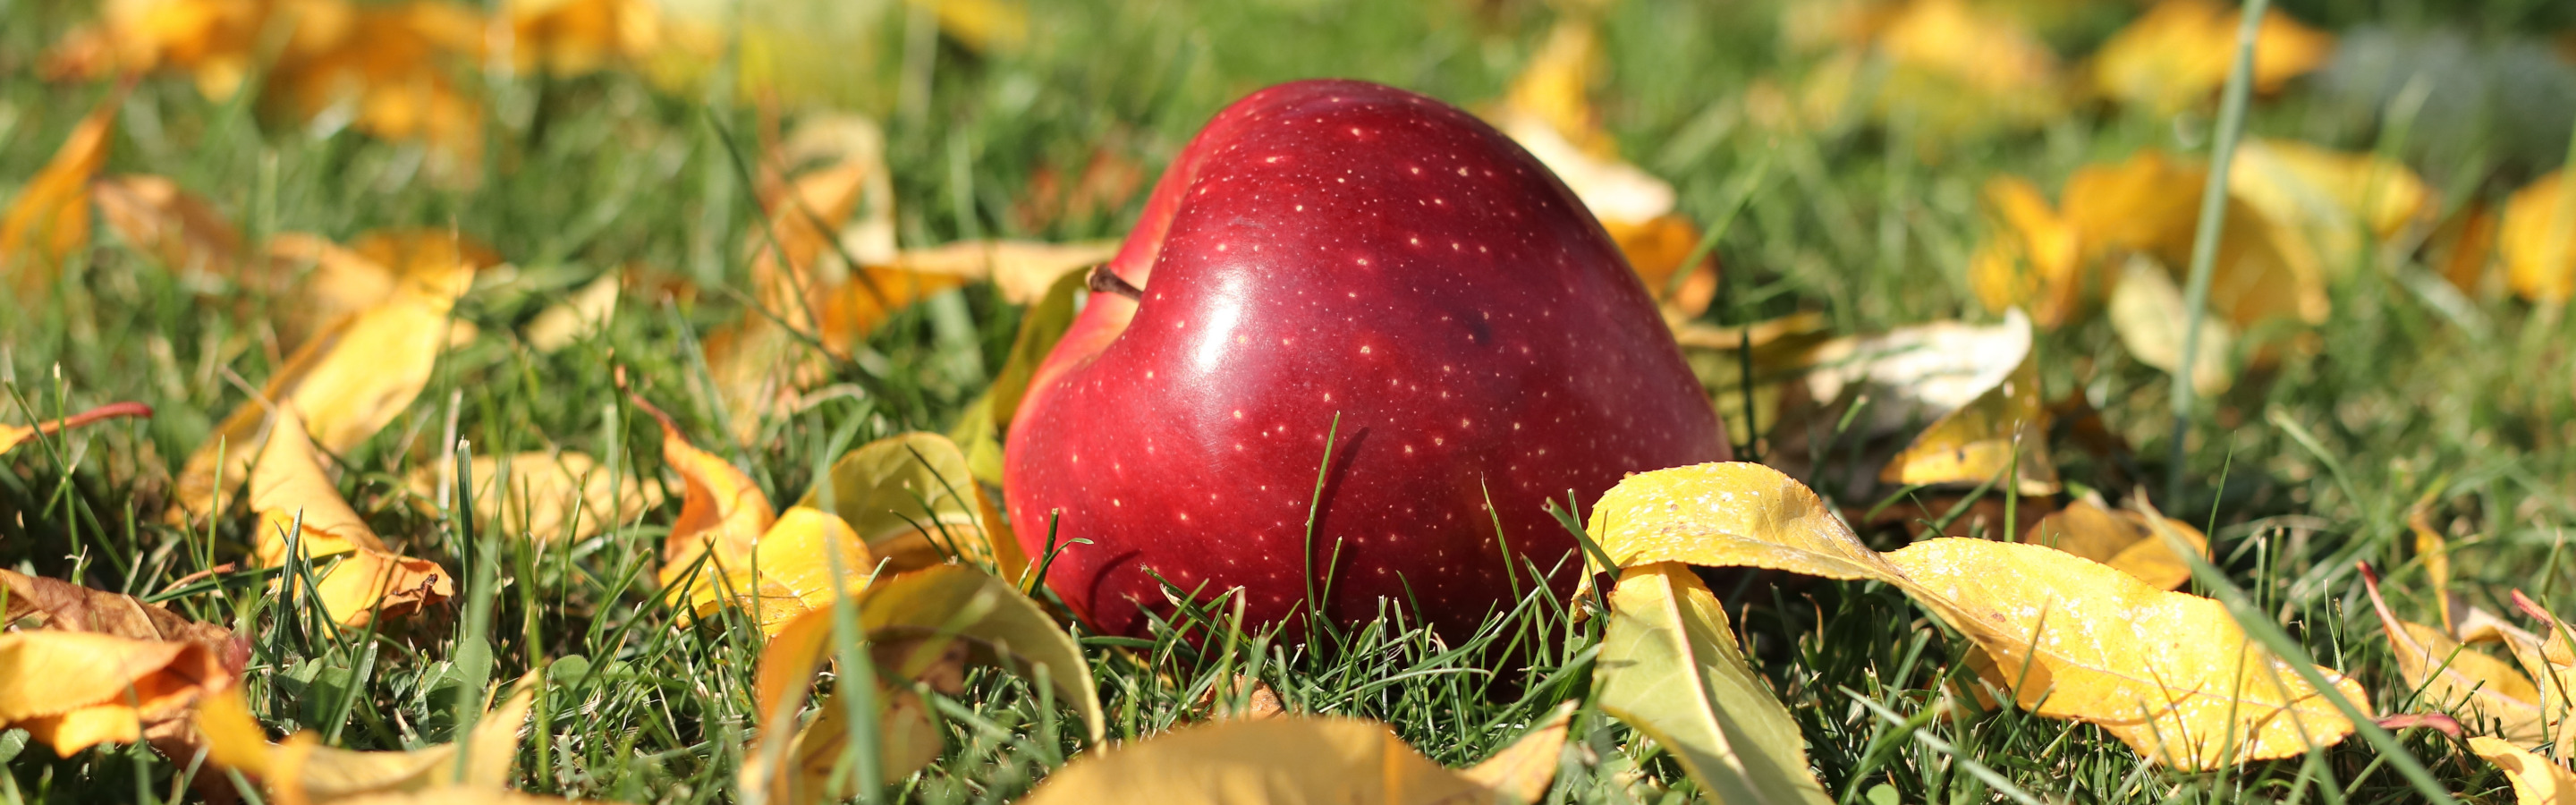 Осенью с яблони собрали яблоки желтые зеленые. Осень. Яблоки осенью. Яблоки в листве. Яблоня осень.